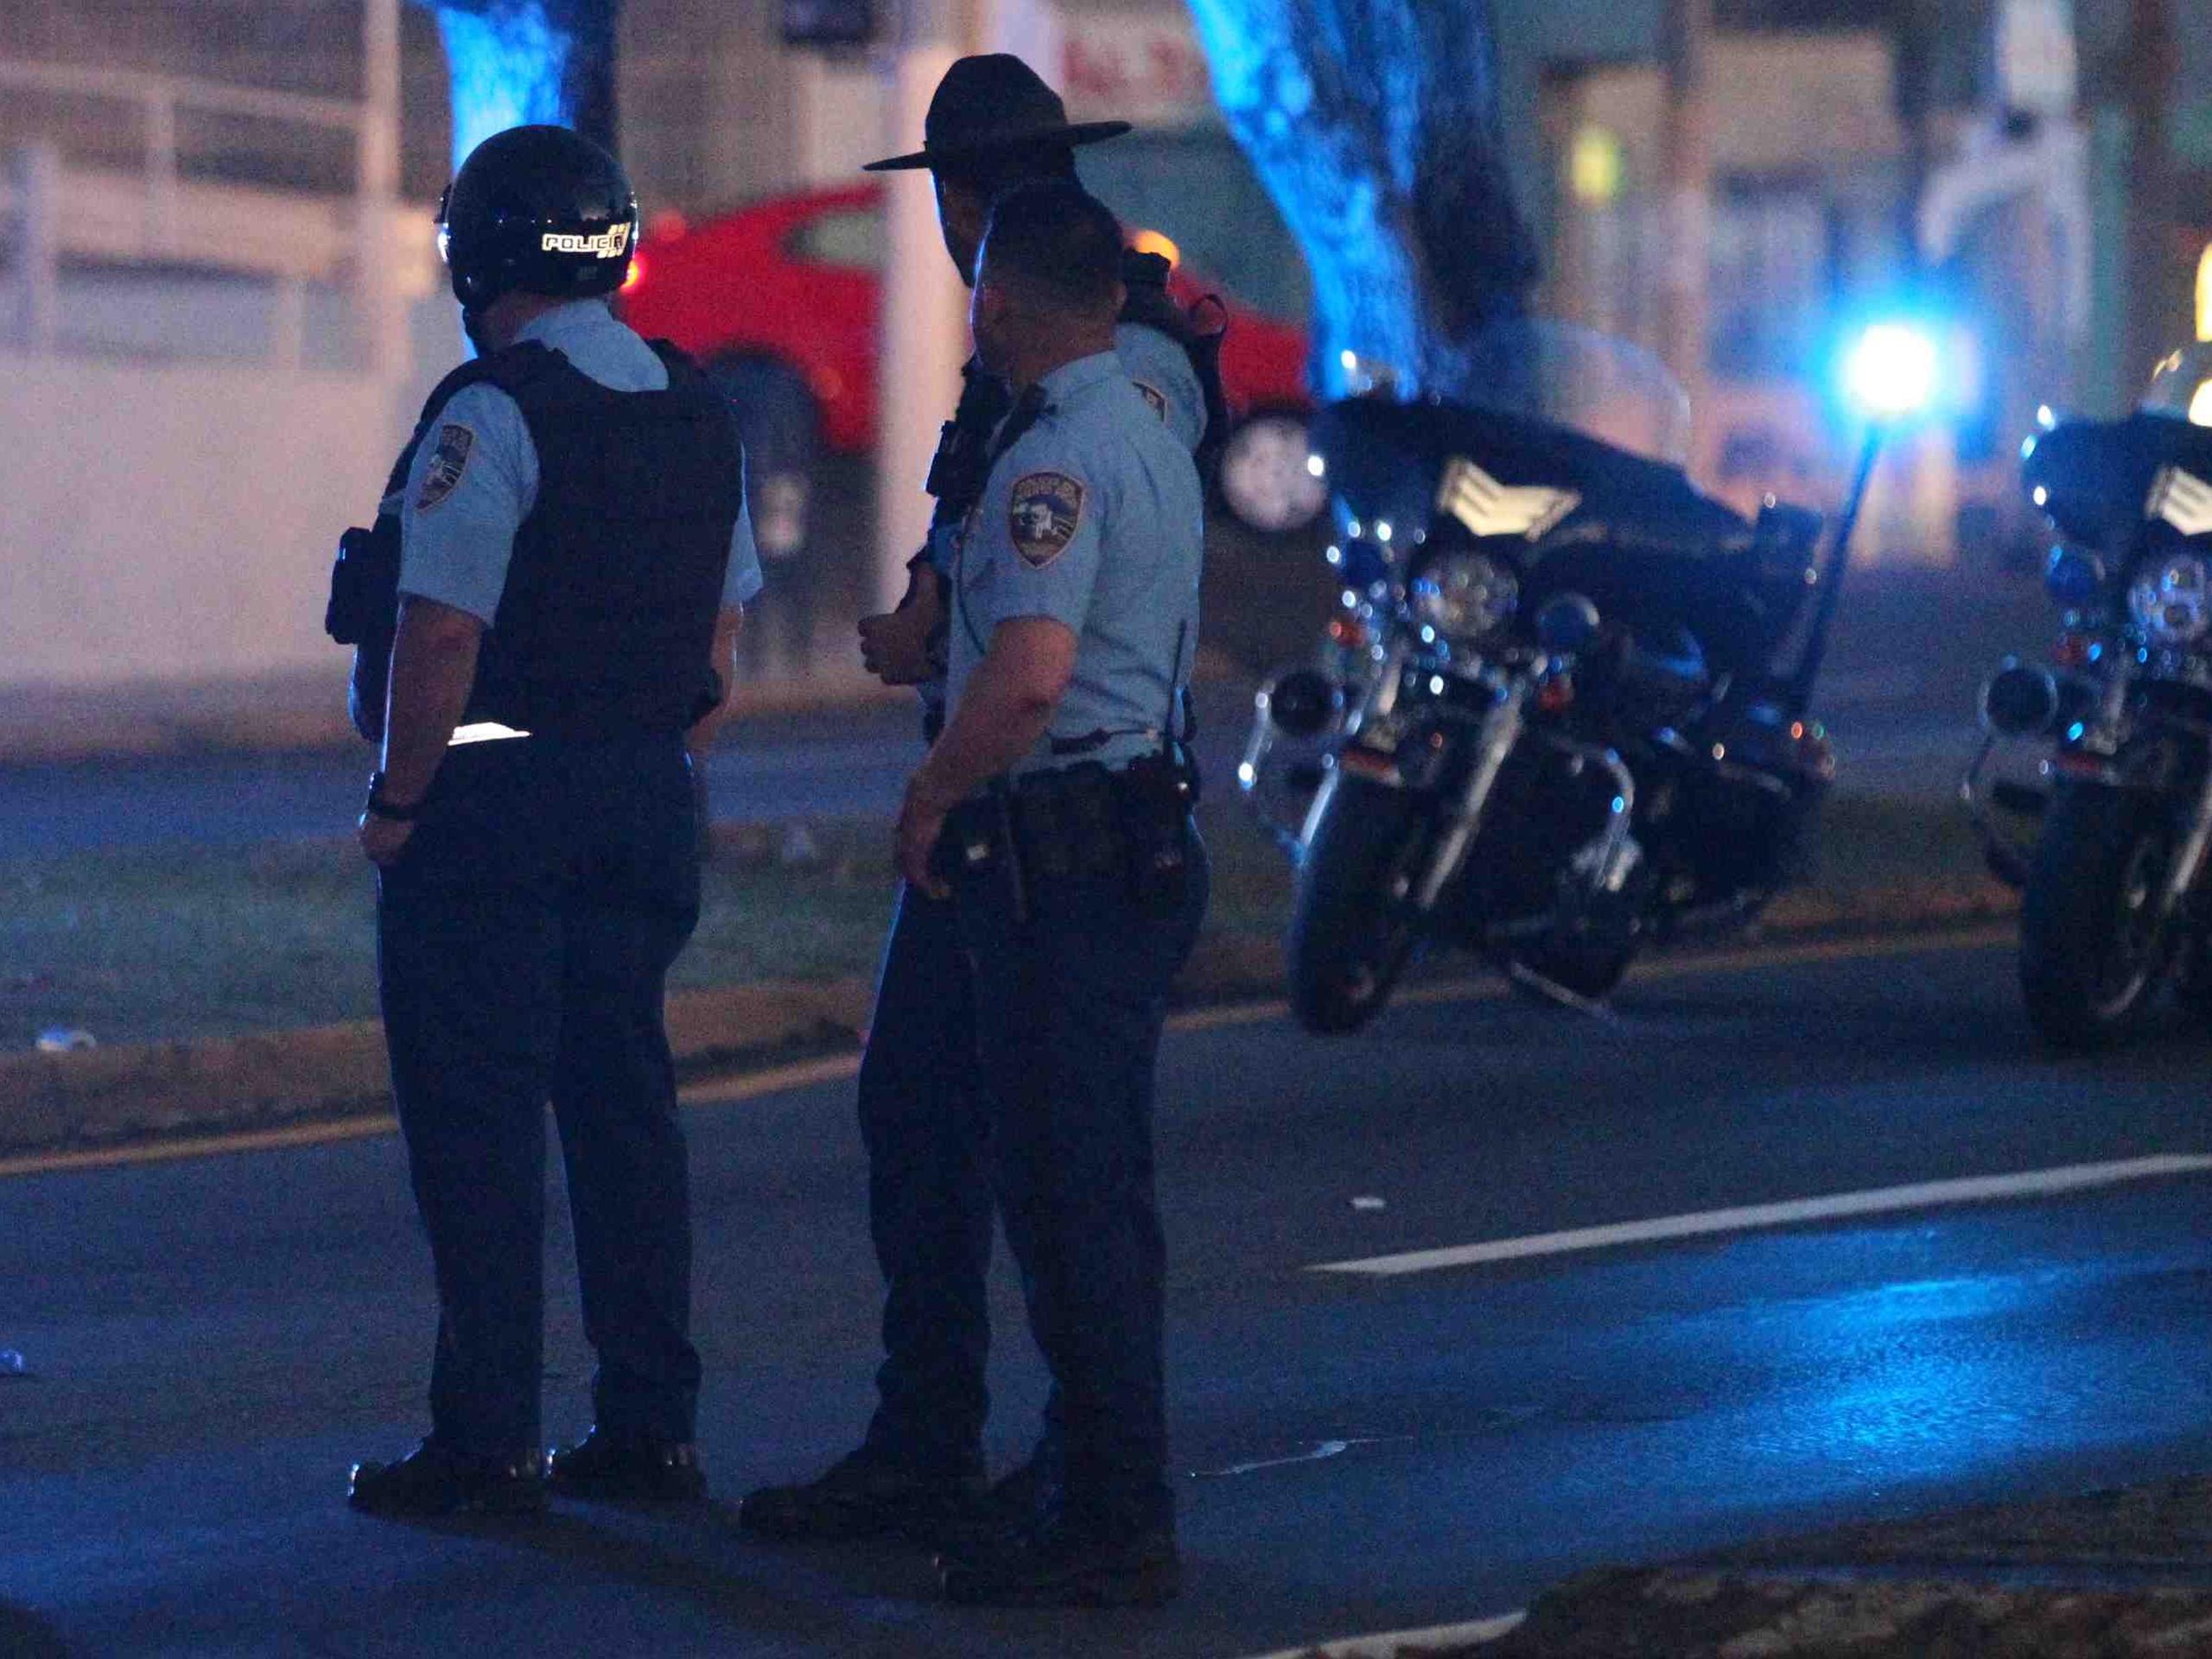 La Policía indicó que el motociclista rebasó una luz roja e impactó otro vehículo. (Archivo / GFR Media)